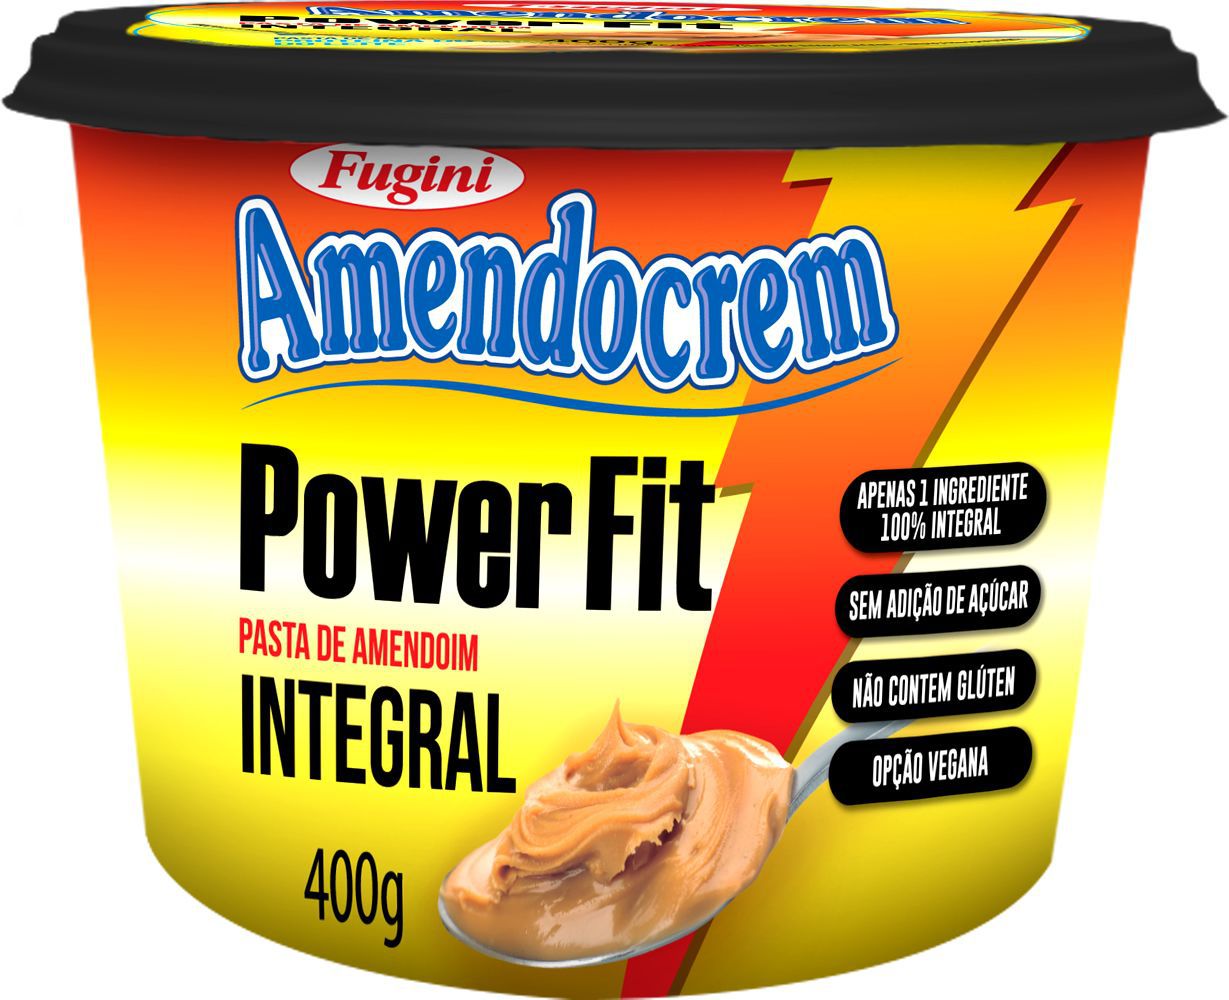 Pasta de Amendoim Integral Power Fit Amendocream Fugini 400g - Loja Vegana